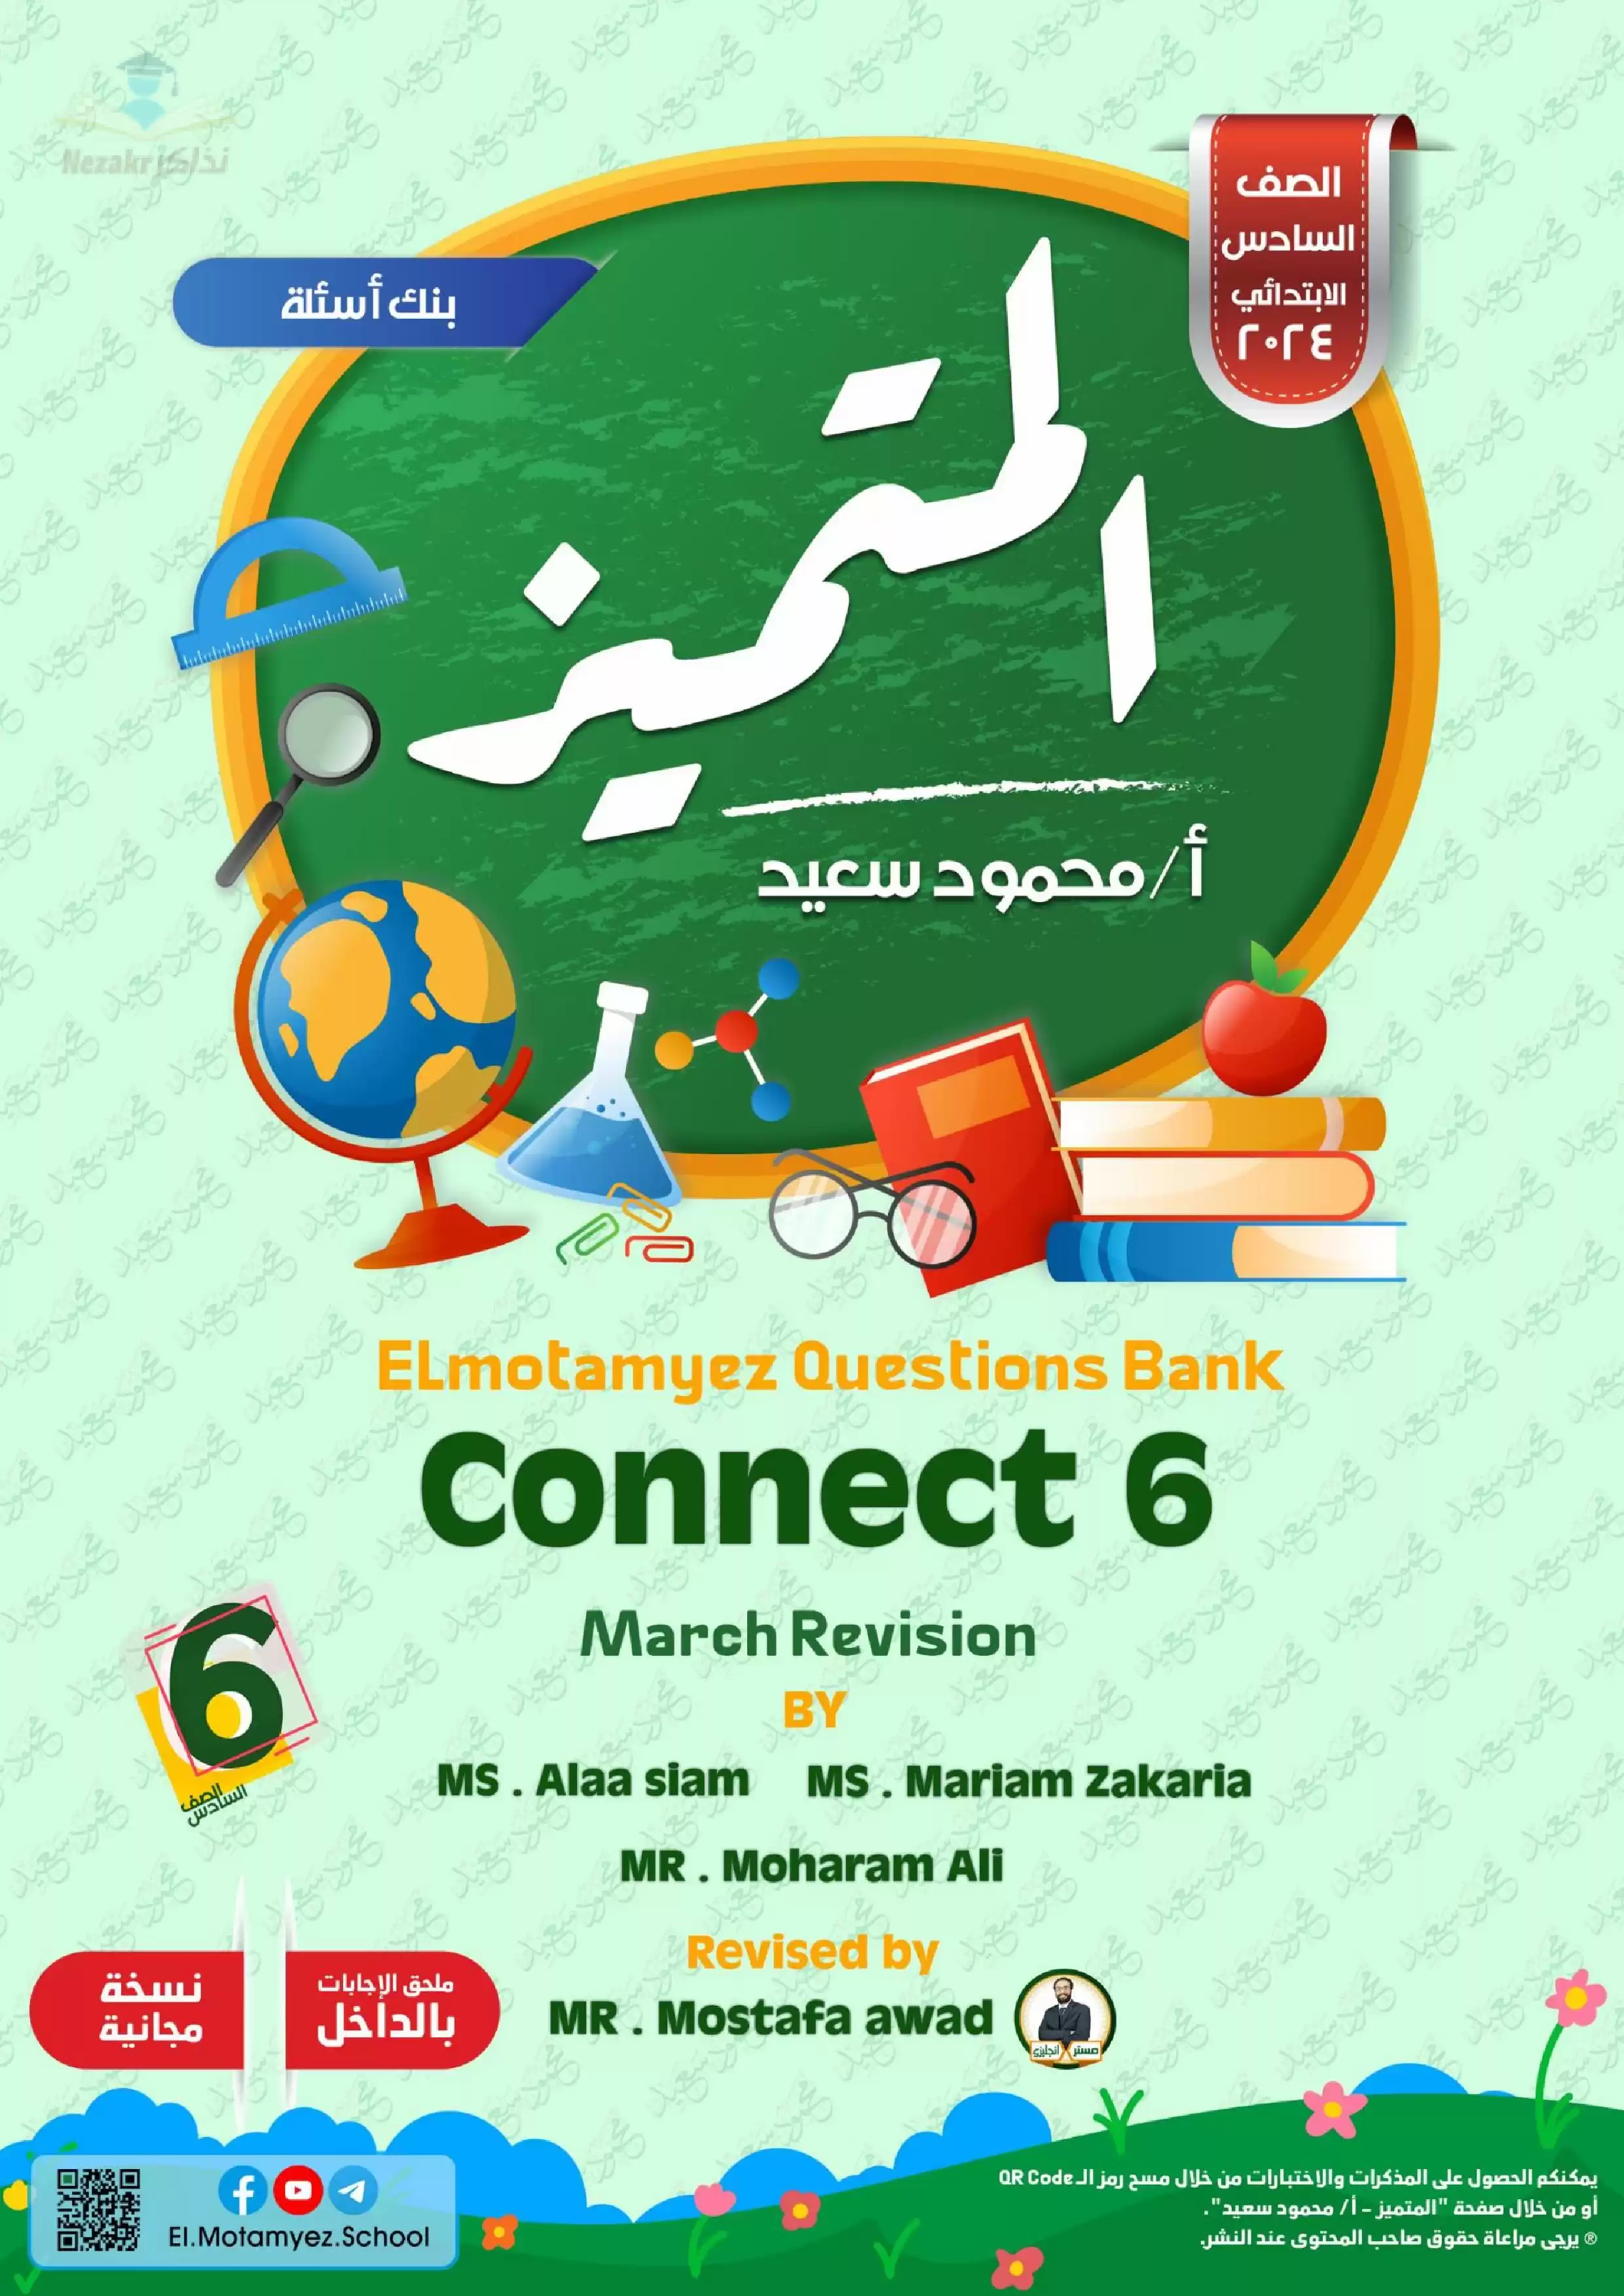 تحميل بنك أسئلة كتاب المتميز في اللغة الإنجليزية Connect 6 لشهر مارس للصف السادس الابتدائي مع إجاباته النموذجية